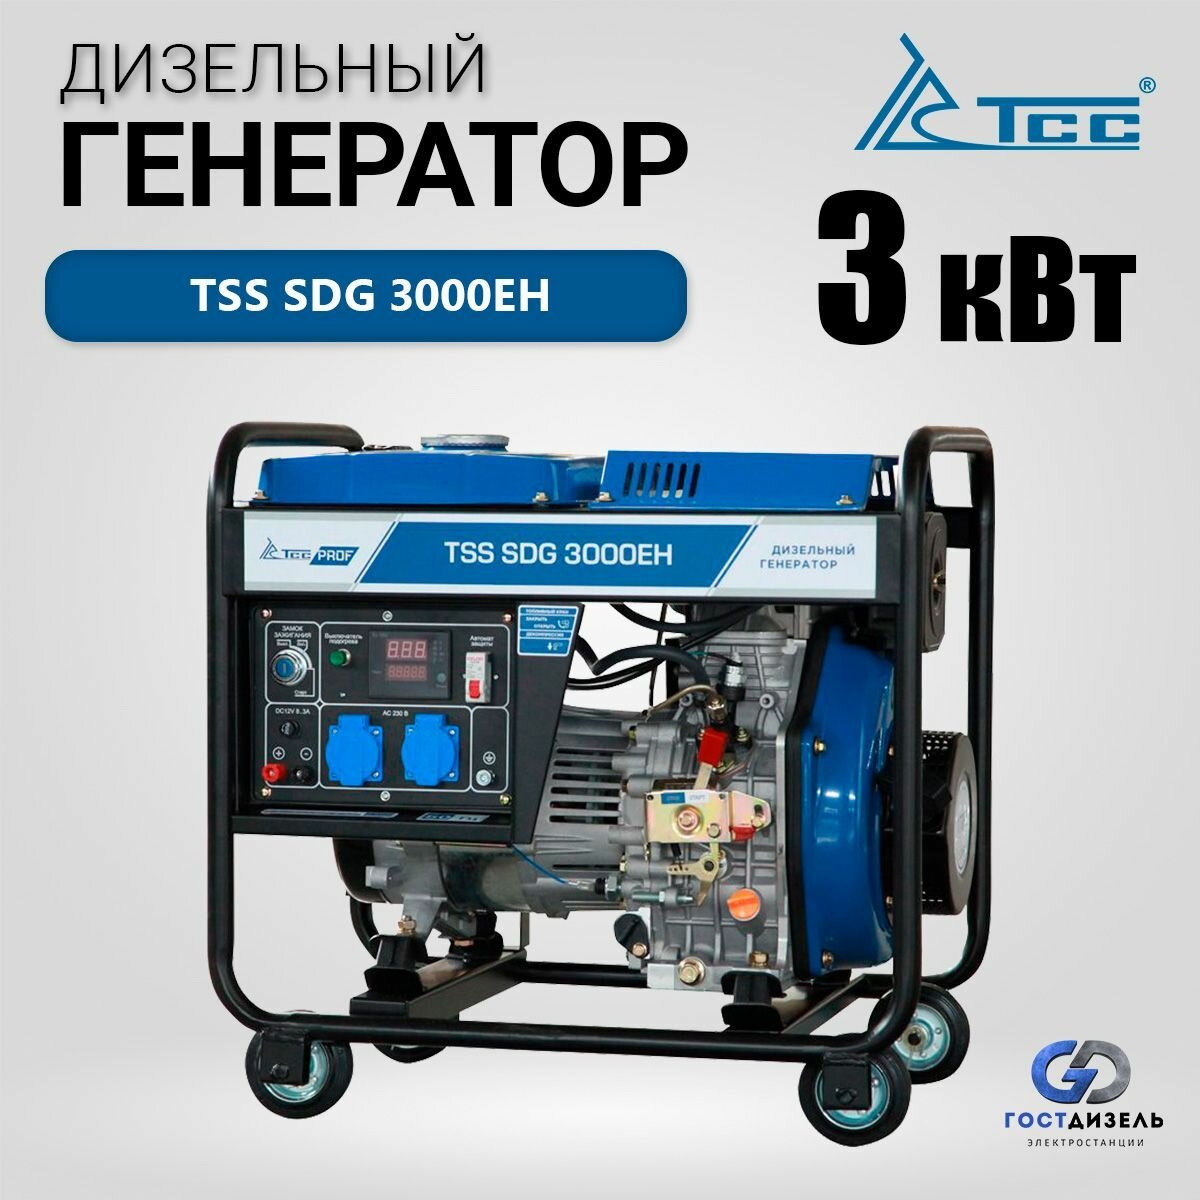 Дизельный генератор TSS SDG 3000EH (3 кВт) Портативный дизельгенератор бытовой